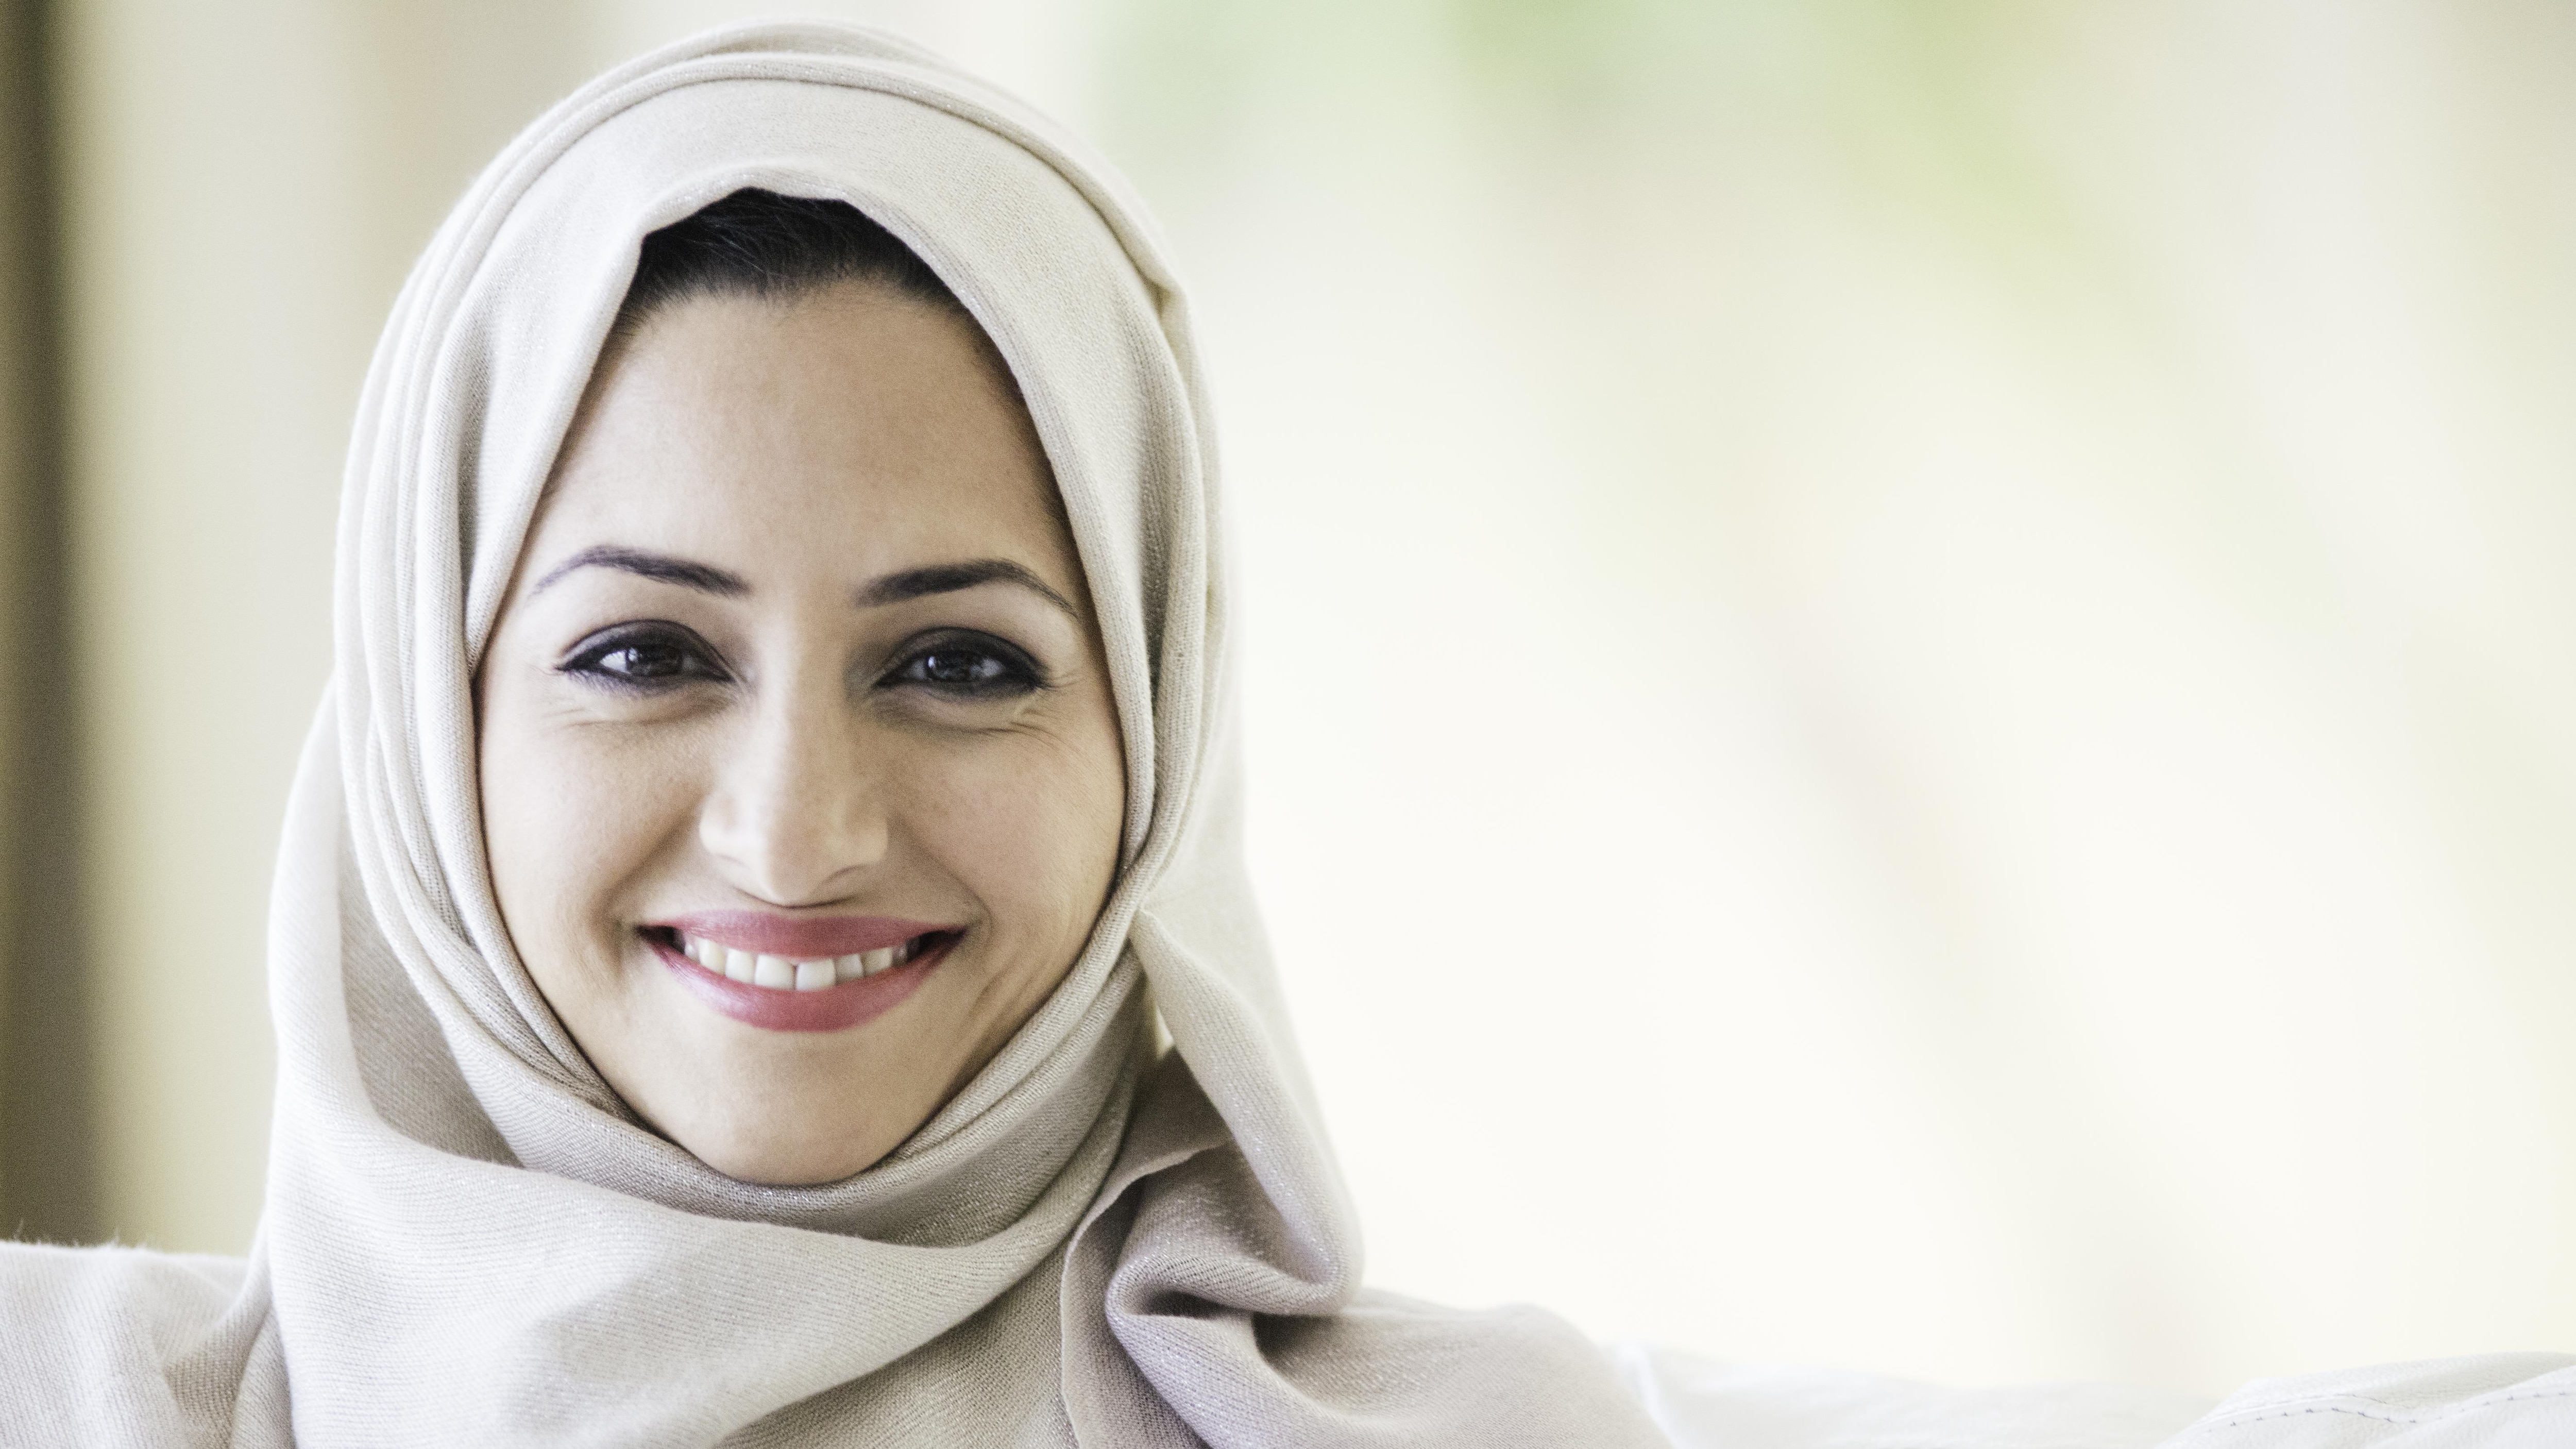 femme musulmane voyage seule